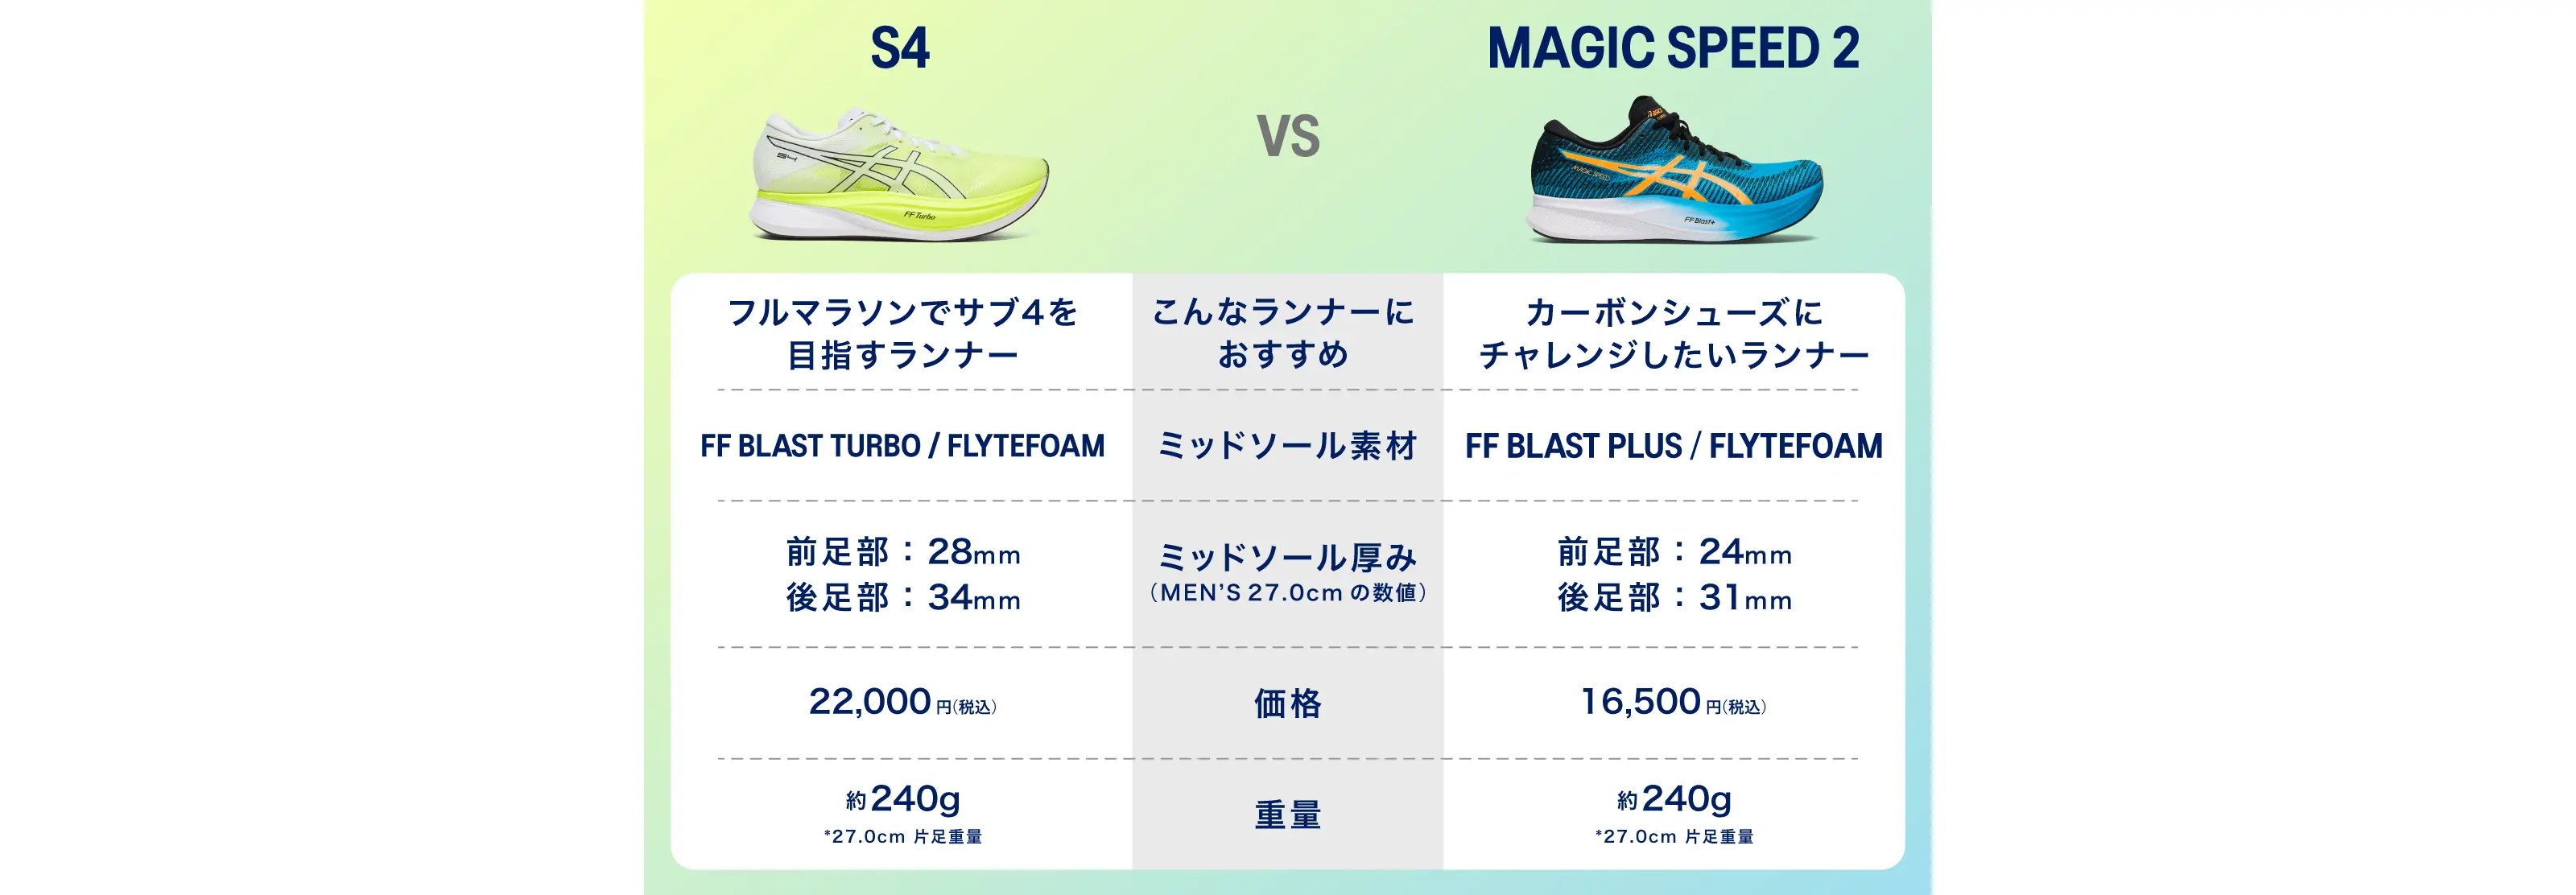 S4 vs MAGIC SPEED 2 比較チャート